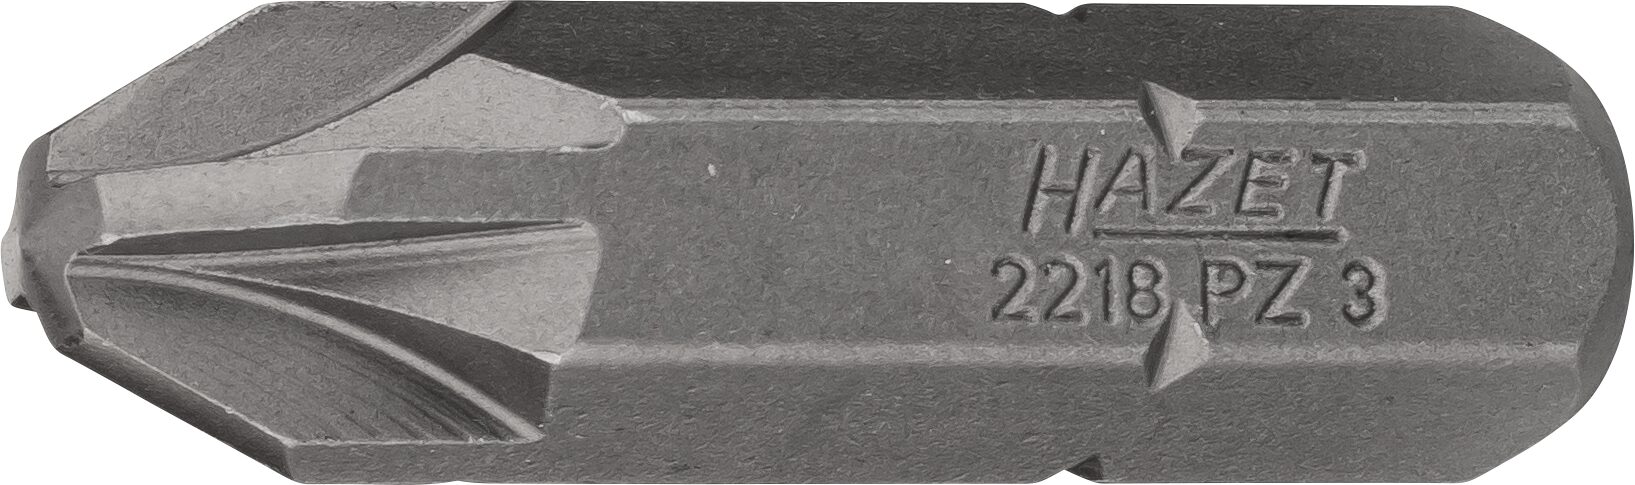 HAZET Bit 2218-PZ3 · Sechskant massiv 8 (5/16 Zoll) · Pozidriv Profil PZ · PZ3